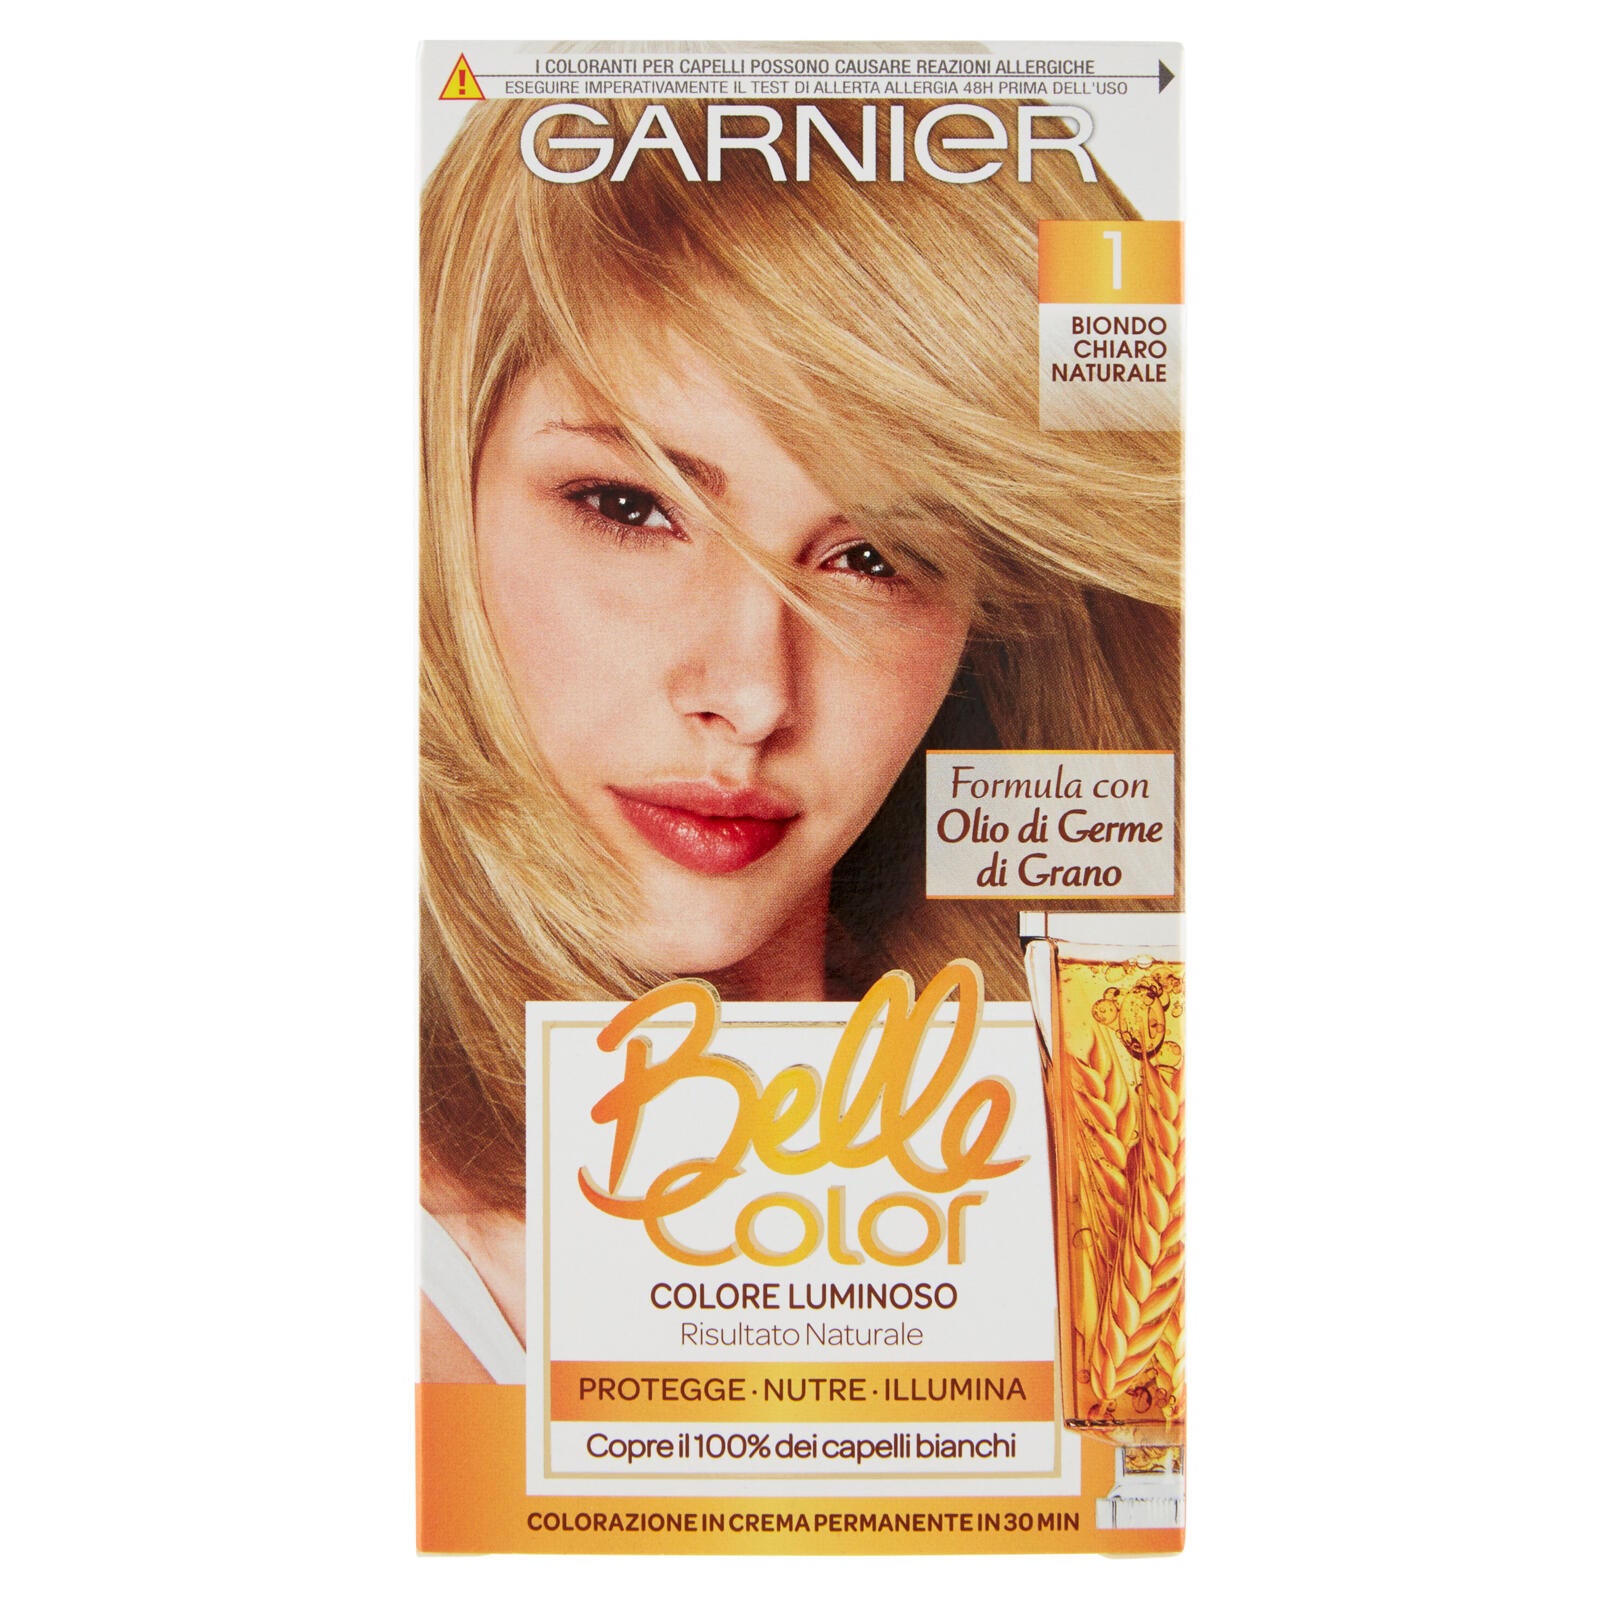 Garnier Belle Color Colore Luminoso, Tinta per Capelli Bianchi 1 Biondo Chiaro Naturale